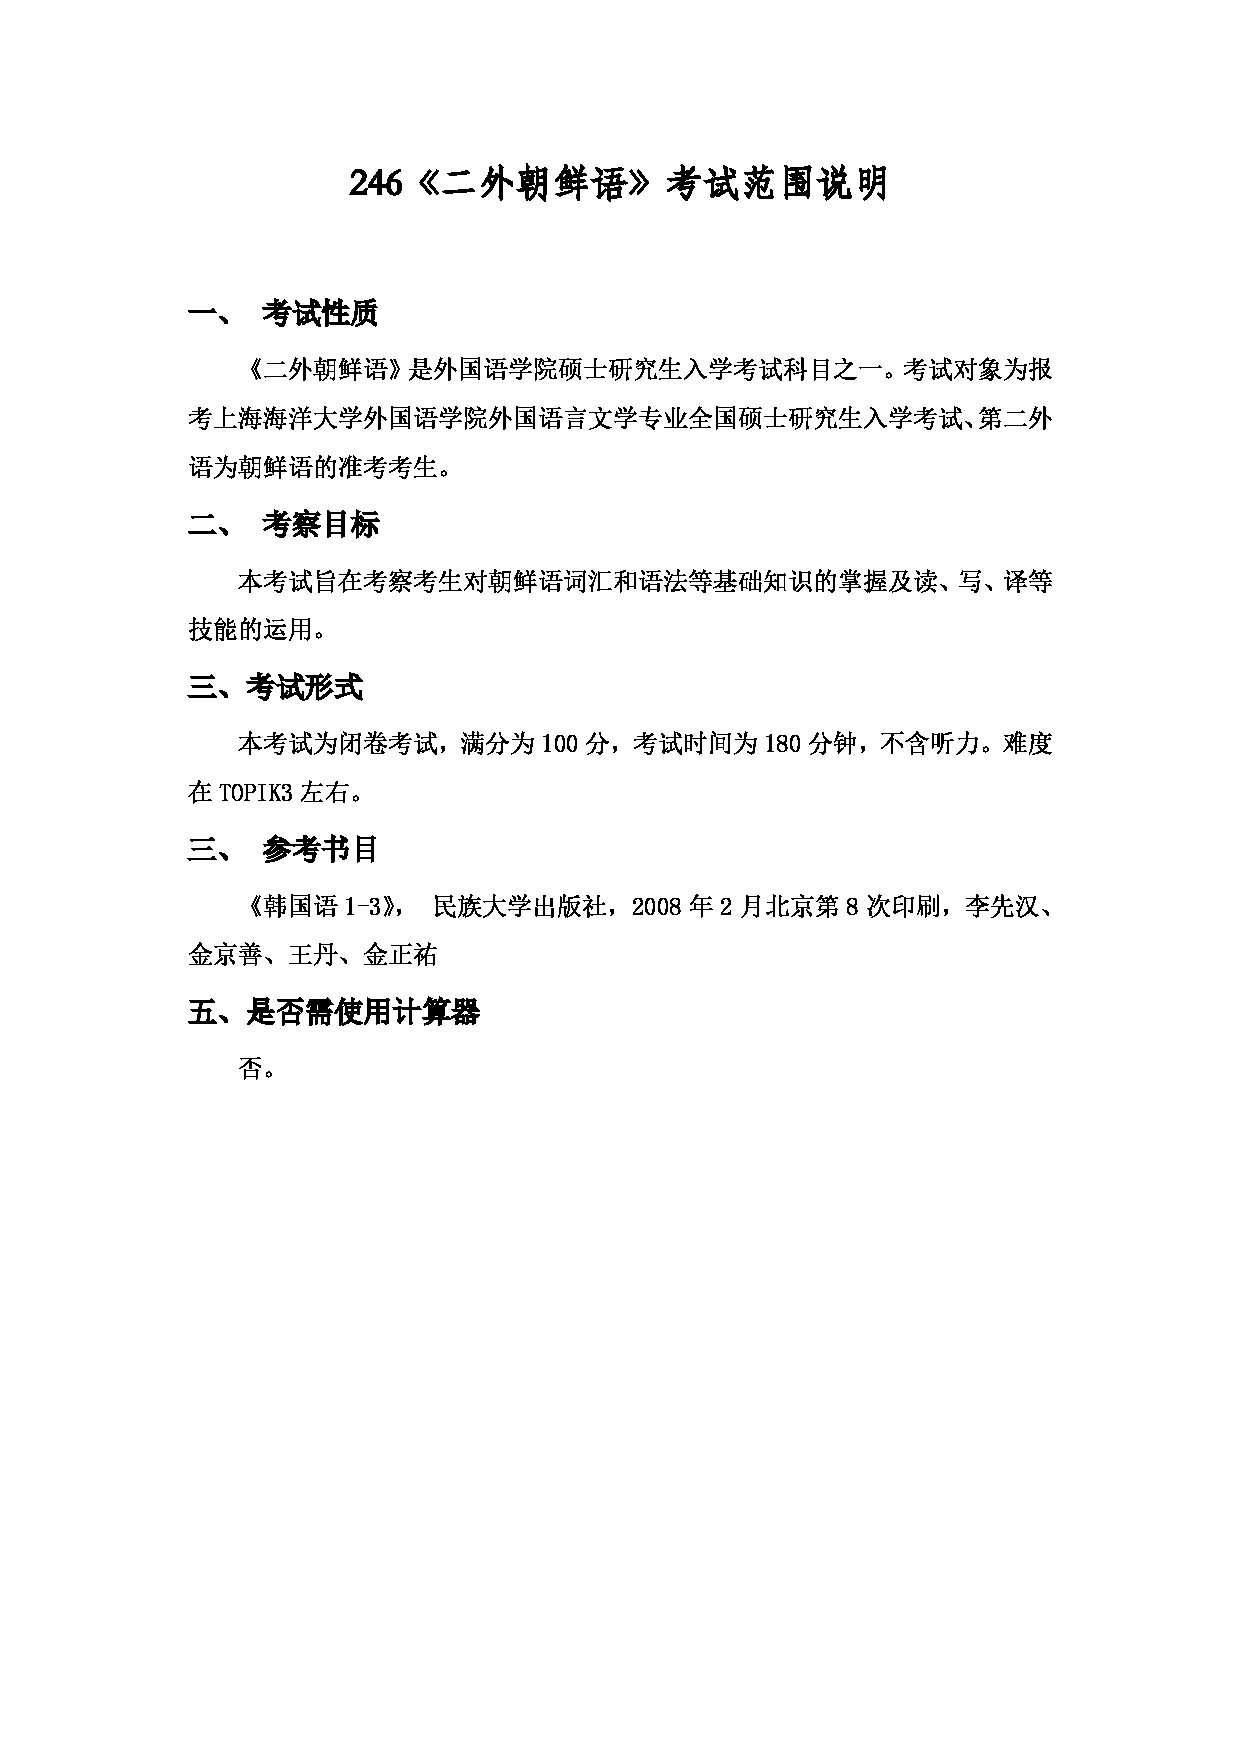 2022考研大纲：上海海洋大学2022年考研自命题科目  246二外朝鲜语 考试大纲第1页